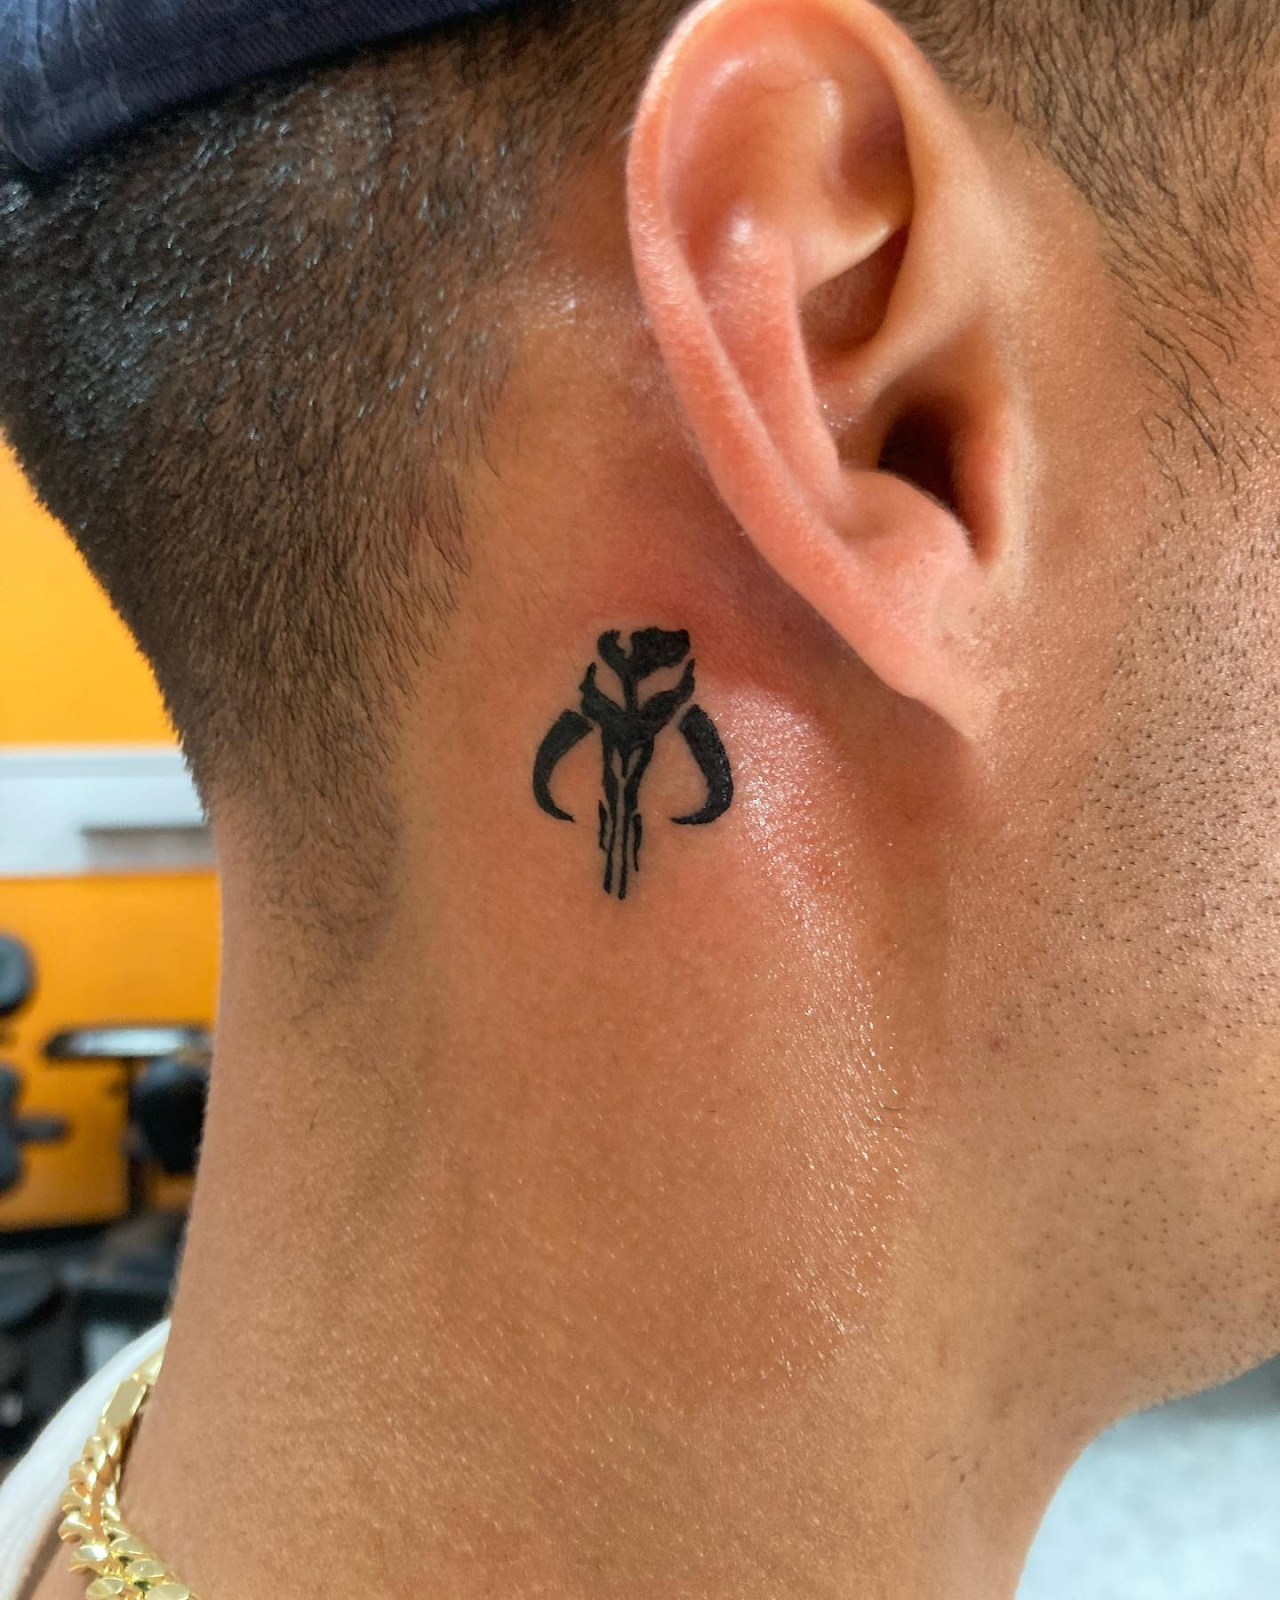 Mandalorian Symbol Behind The Ear Tattoo